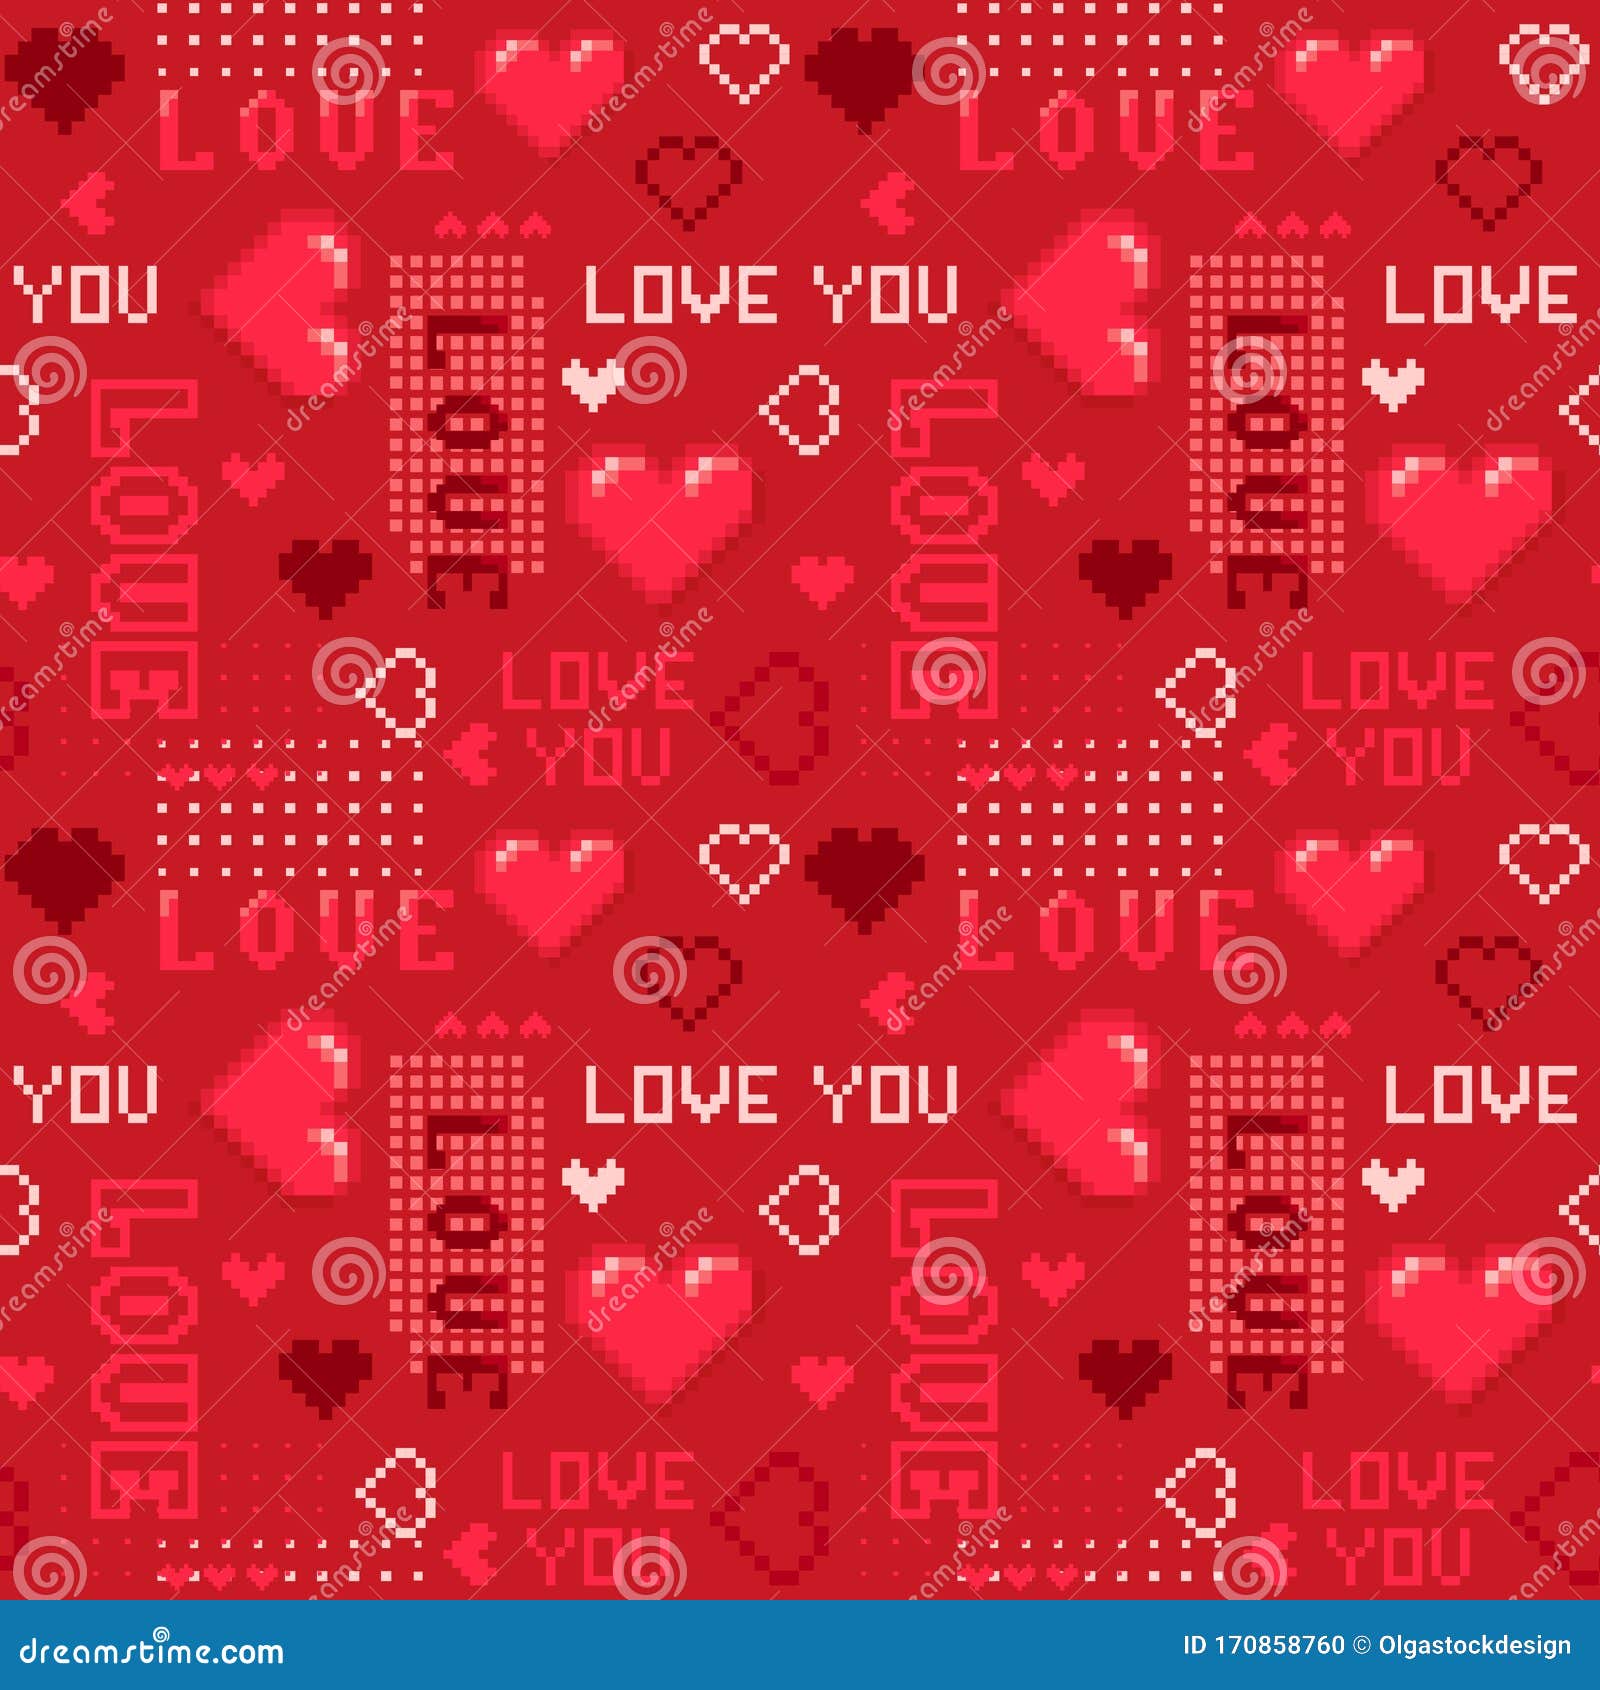 Hãy cùng tìm hiểu về họa tiết Seamless ngày Valentine với hình trái tim và chữ Love trên nền đỏ thập niên